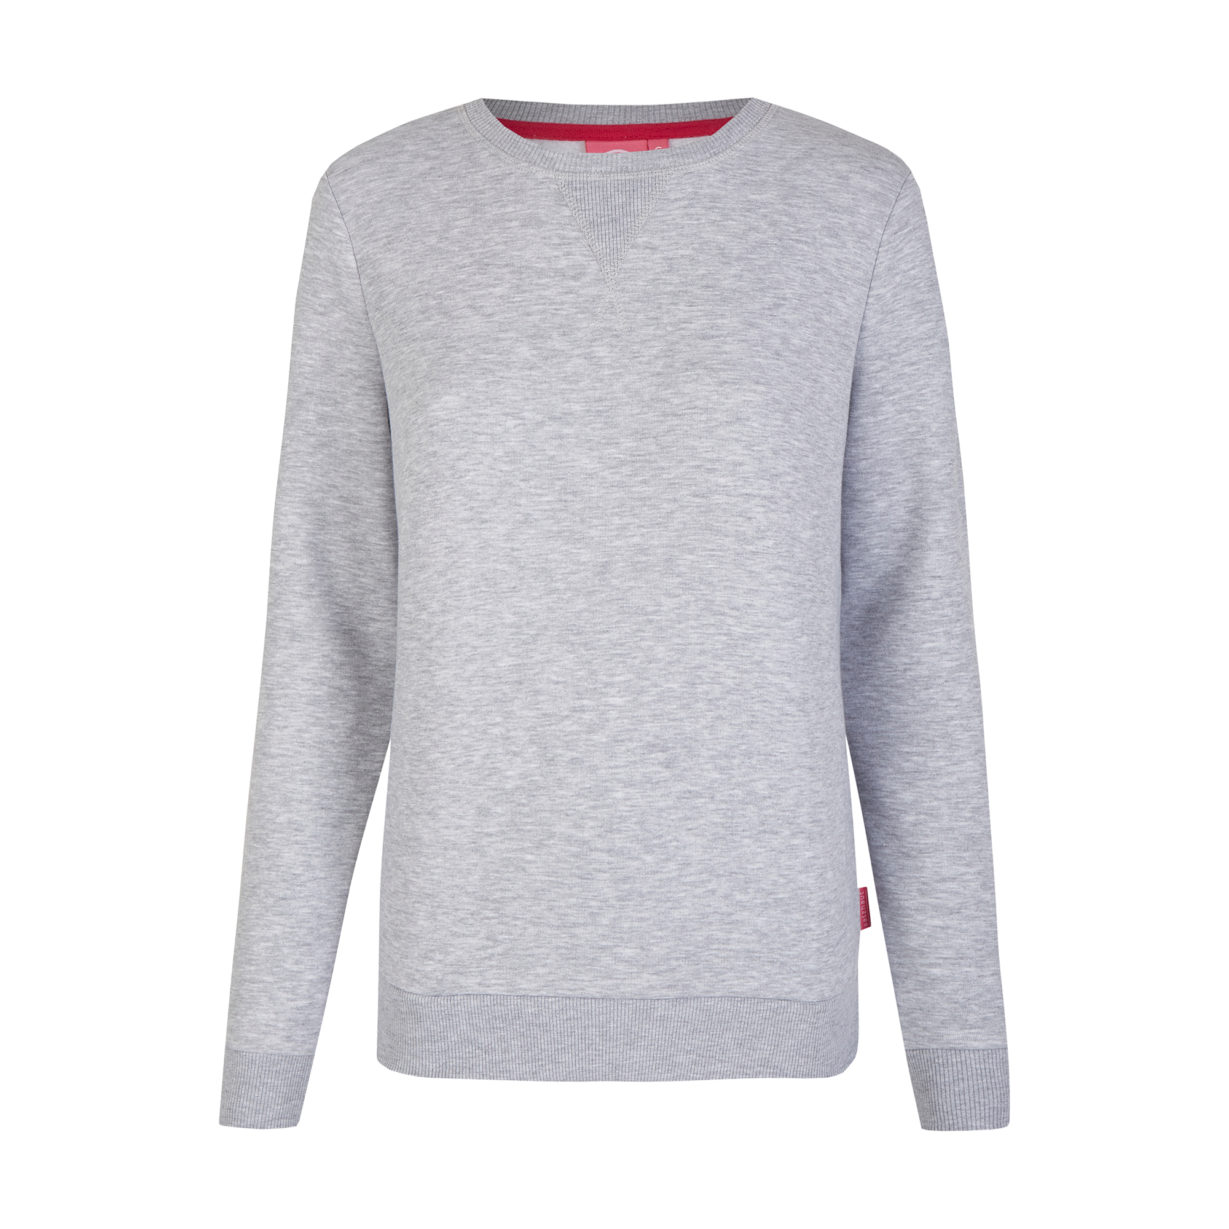 Adele - Sweatshirt Grey Melange